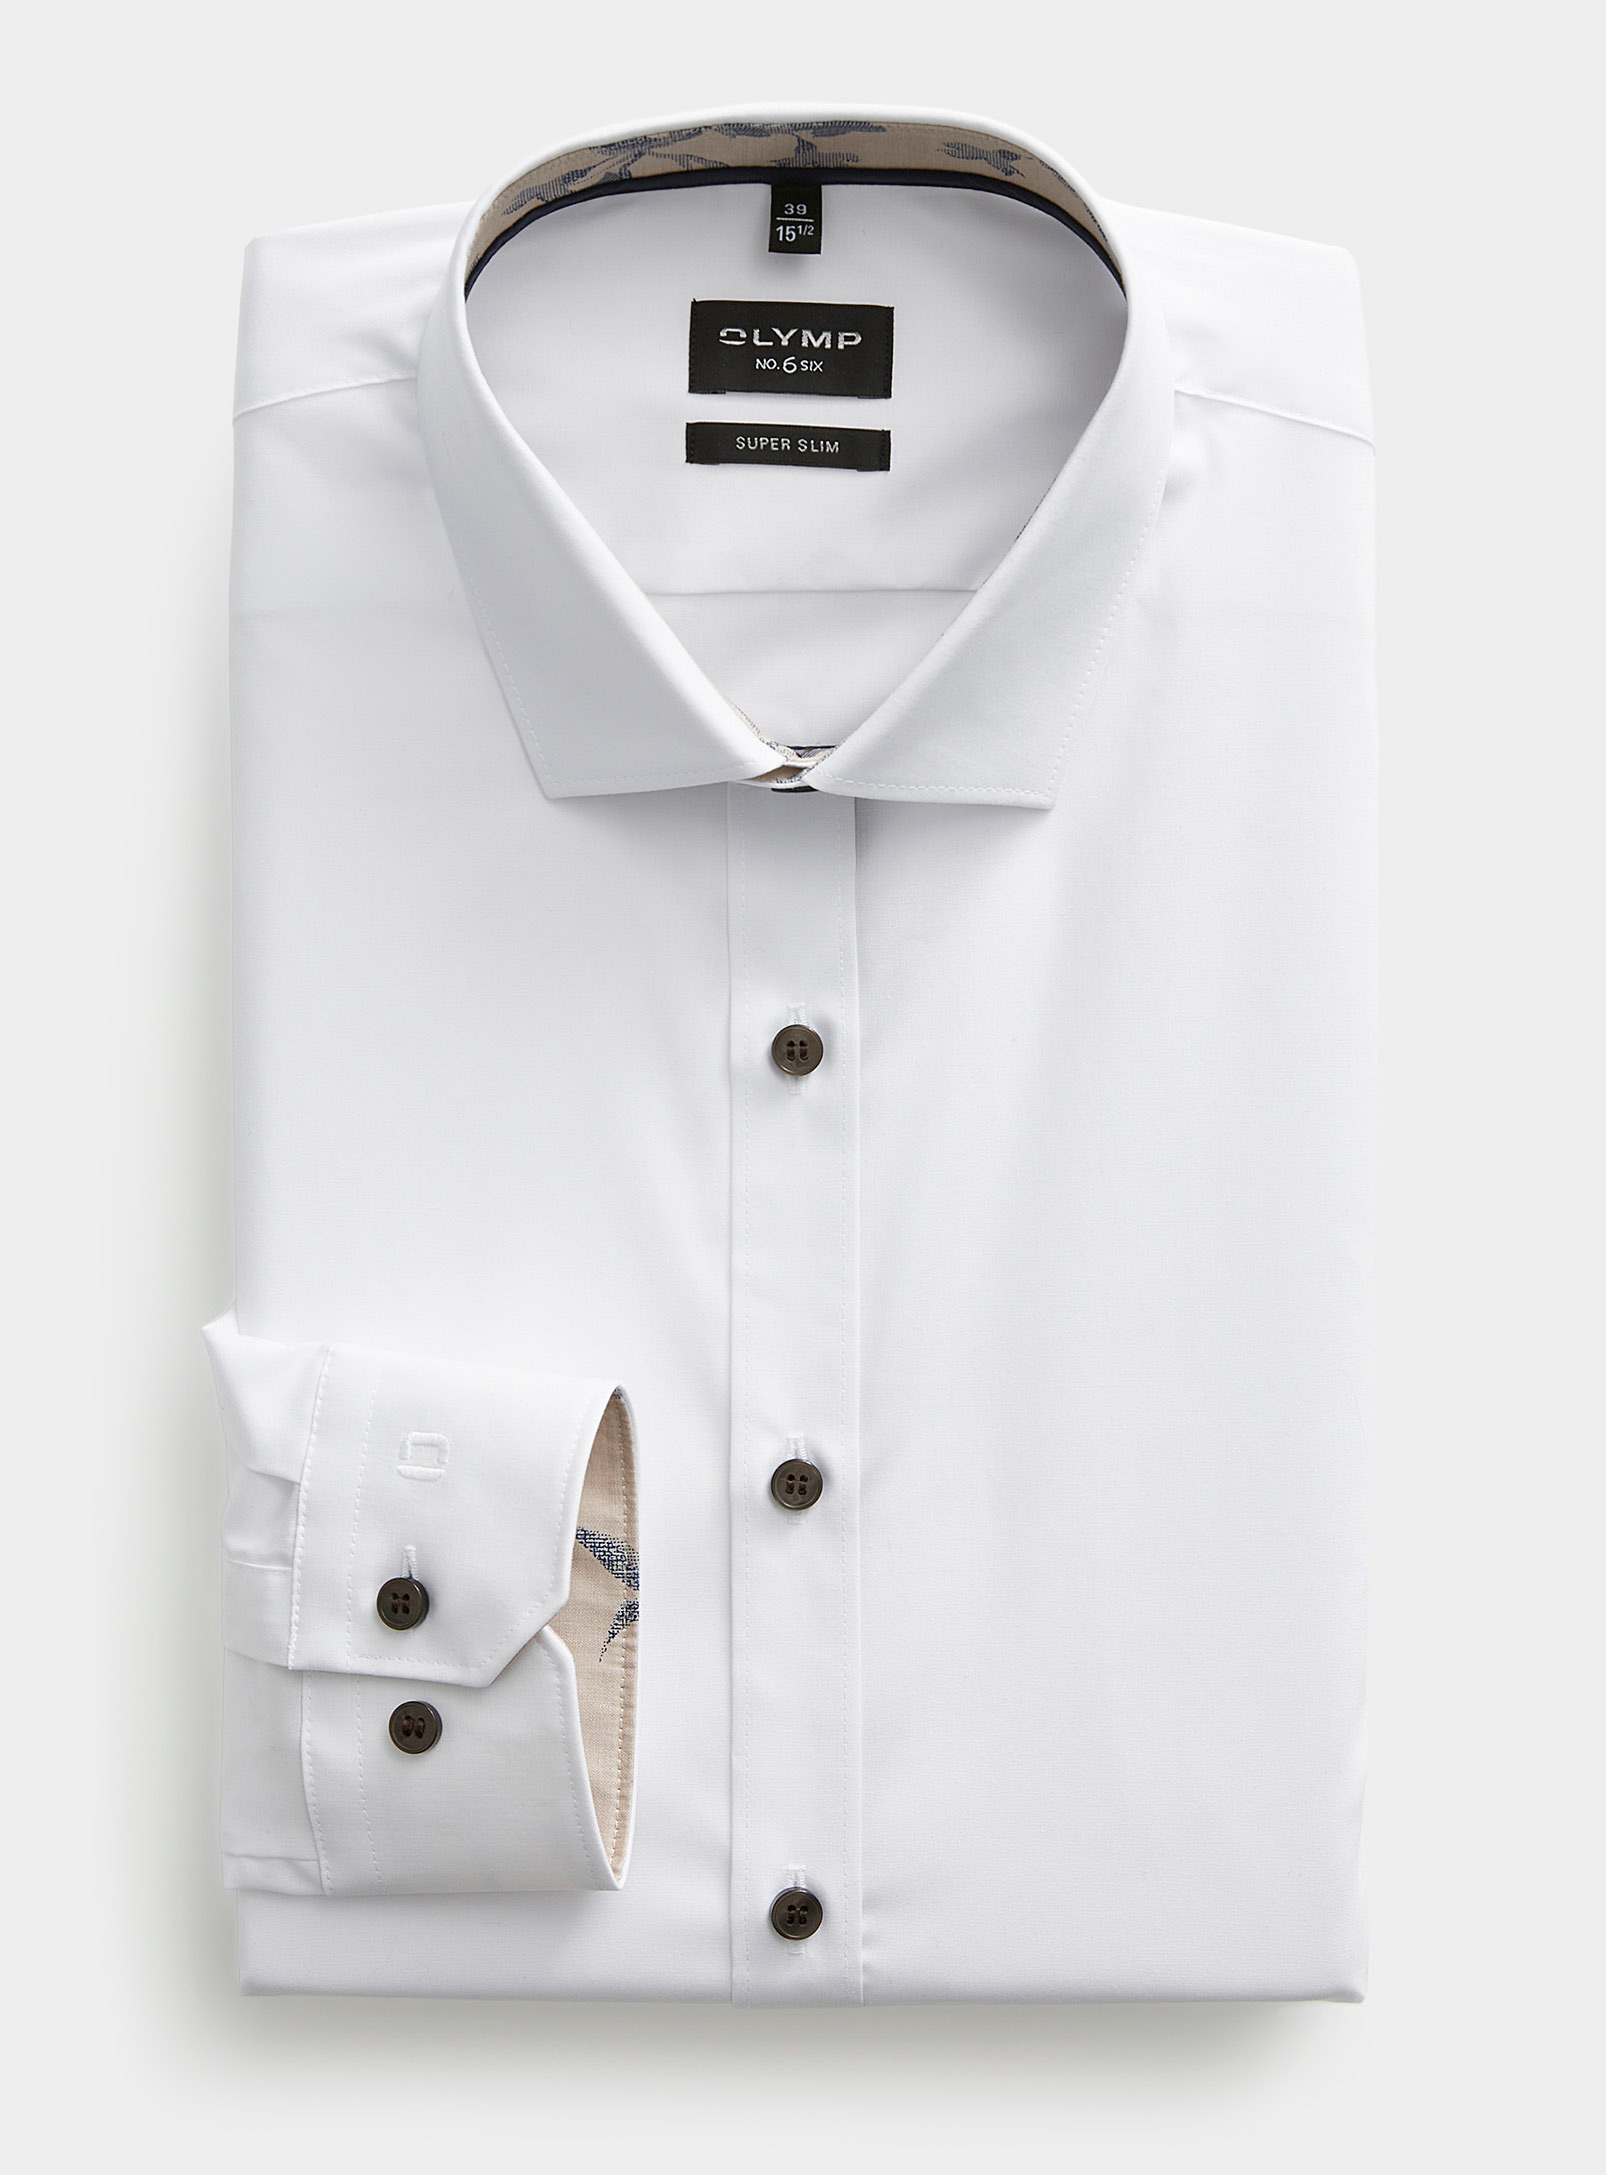 Olymp - La chemise blanche boutons contrastants Coupe ajustée